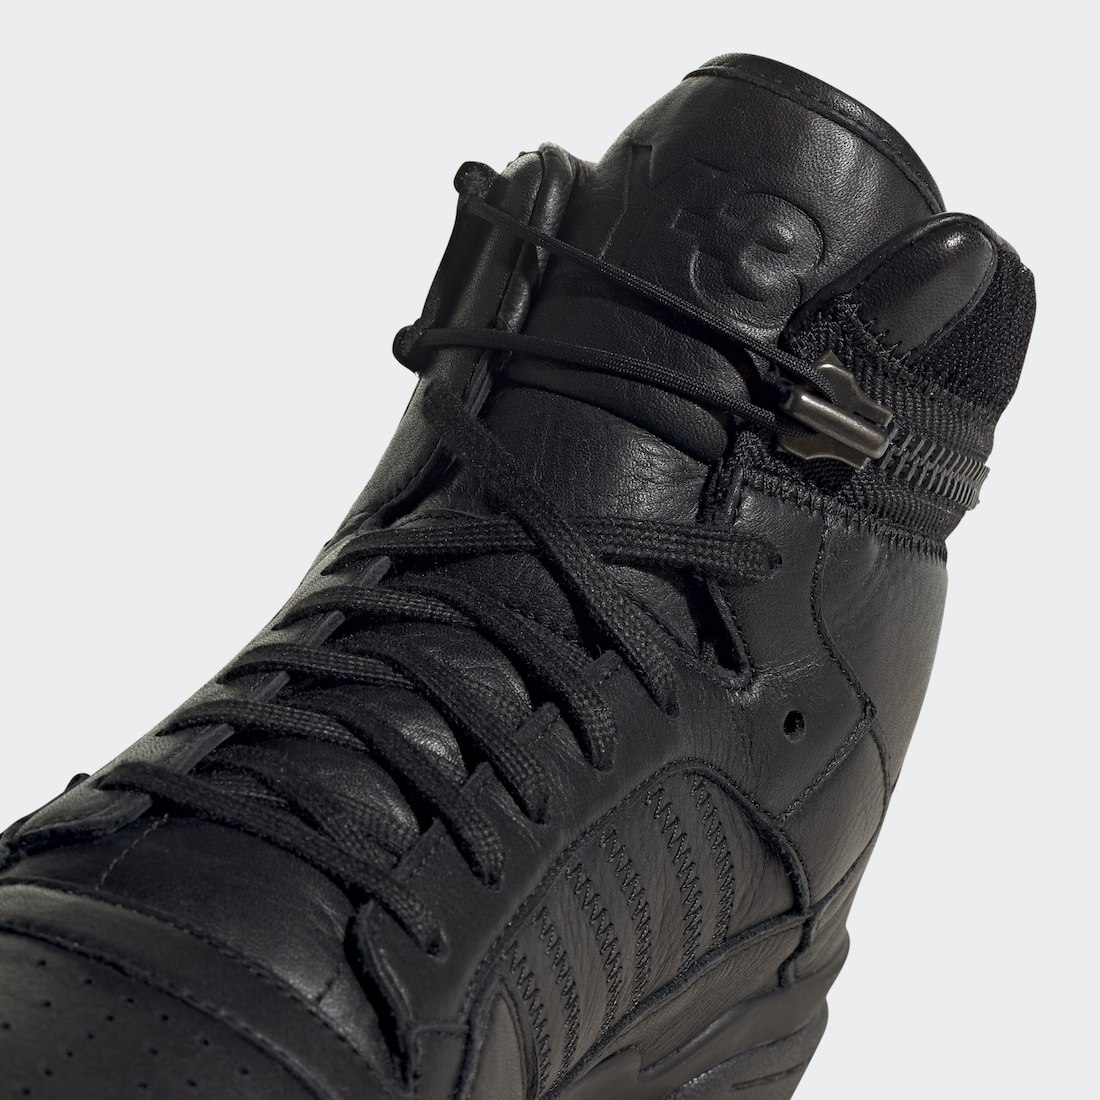 adidas Y-3 Forum Hi OG Black GZ8795 Release Date